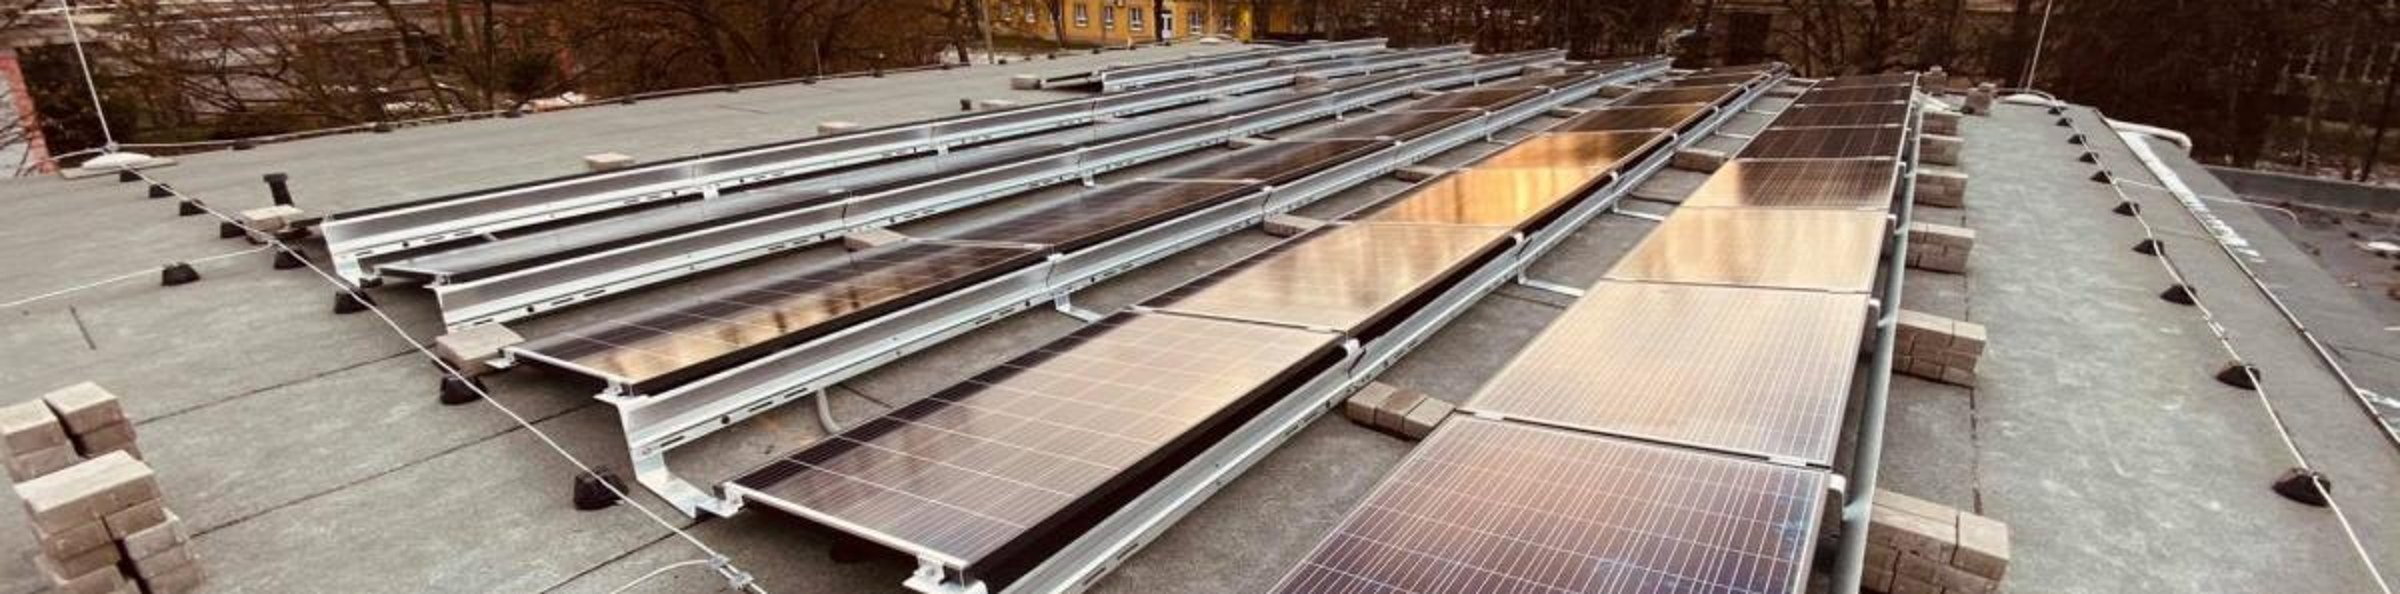 Solar-Re napelem magánszemélyeknek, cégeknek